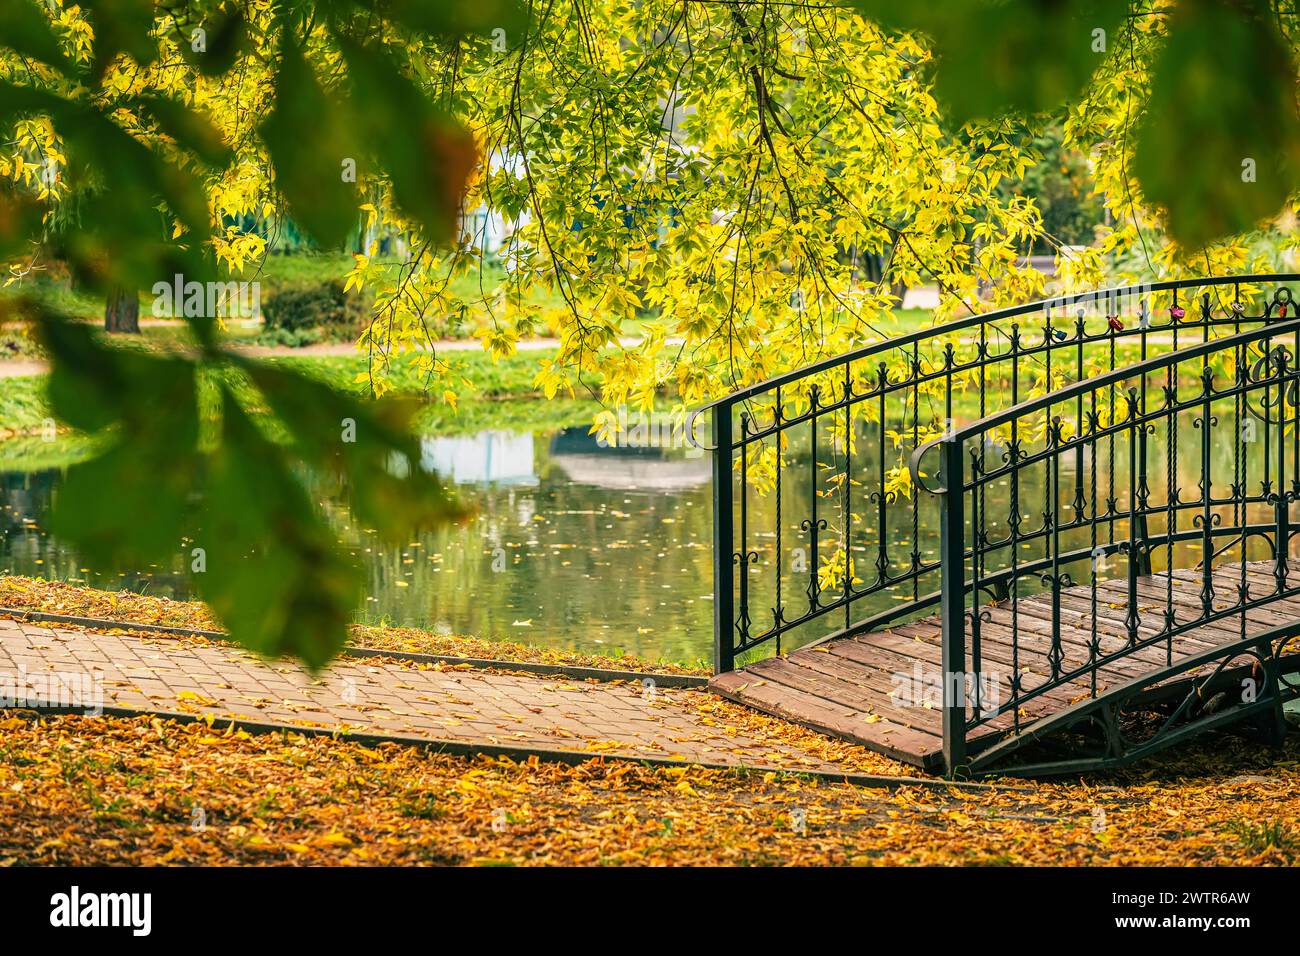 Metallbrücke über einem Teich mit gelben Blättern auf dem Boden. Herbst, Laubfall-Konzept Stockfoto